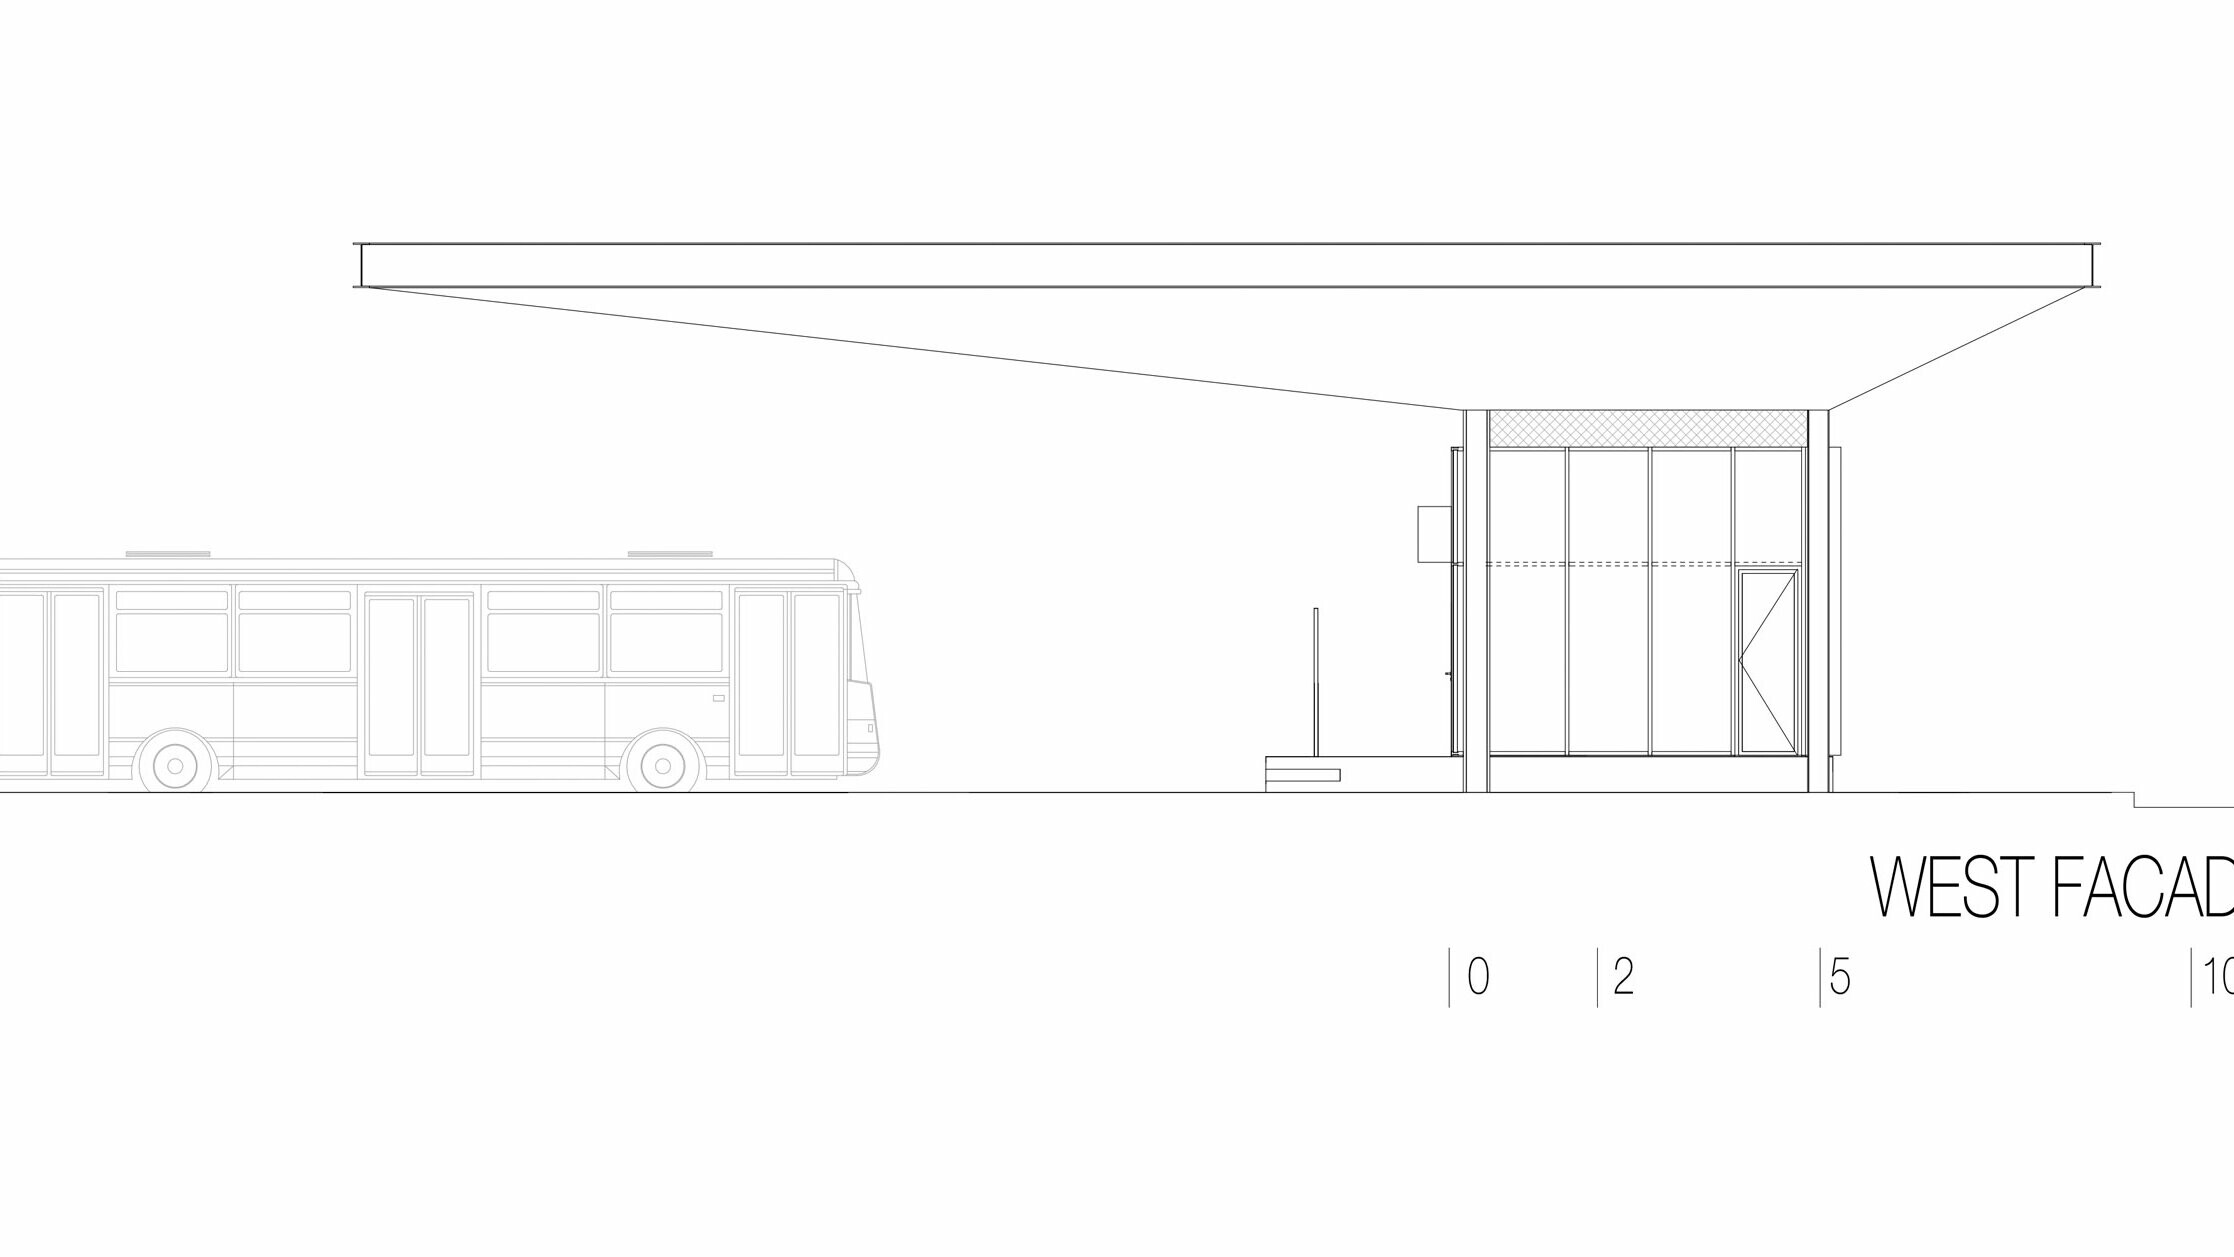 Il disegno mostra la vista ovest dell’autostazione ”Autobusni Kolodvor Slavonski Brod” in Croazia. L’illustrazione mette in risalto il lungo tetto bianco orizzontale PREFA Prefalz, che sporge sull’area sottostante. A destra del disegno si trova un edificio rettangolare con ampie superfici vetrate e linee chiare. A sinistra si trova un autobus, che testimonia le proporzioni della fermata rispetto a un veicolo. La vista ovest sottolinea l’architettura moderna e funzionale della stazione, che crea un’atmosfera luminosa e invitante grazie alla combinazione di vetro e alluminio.